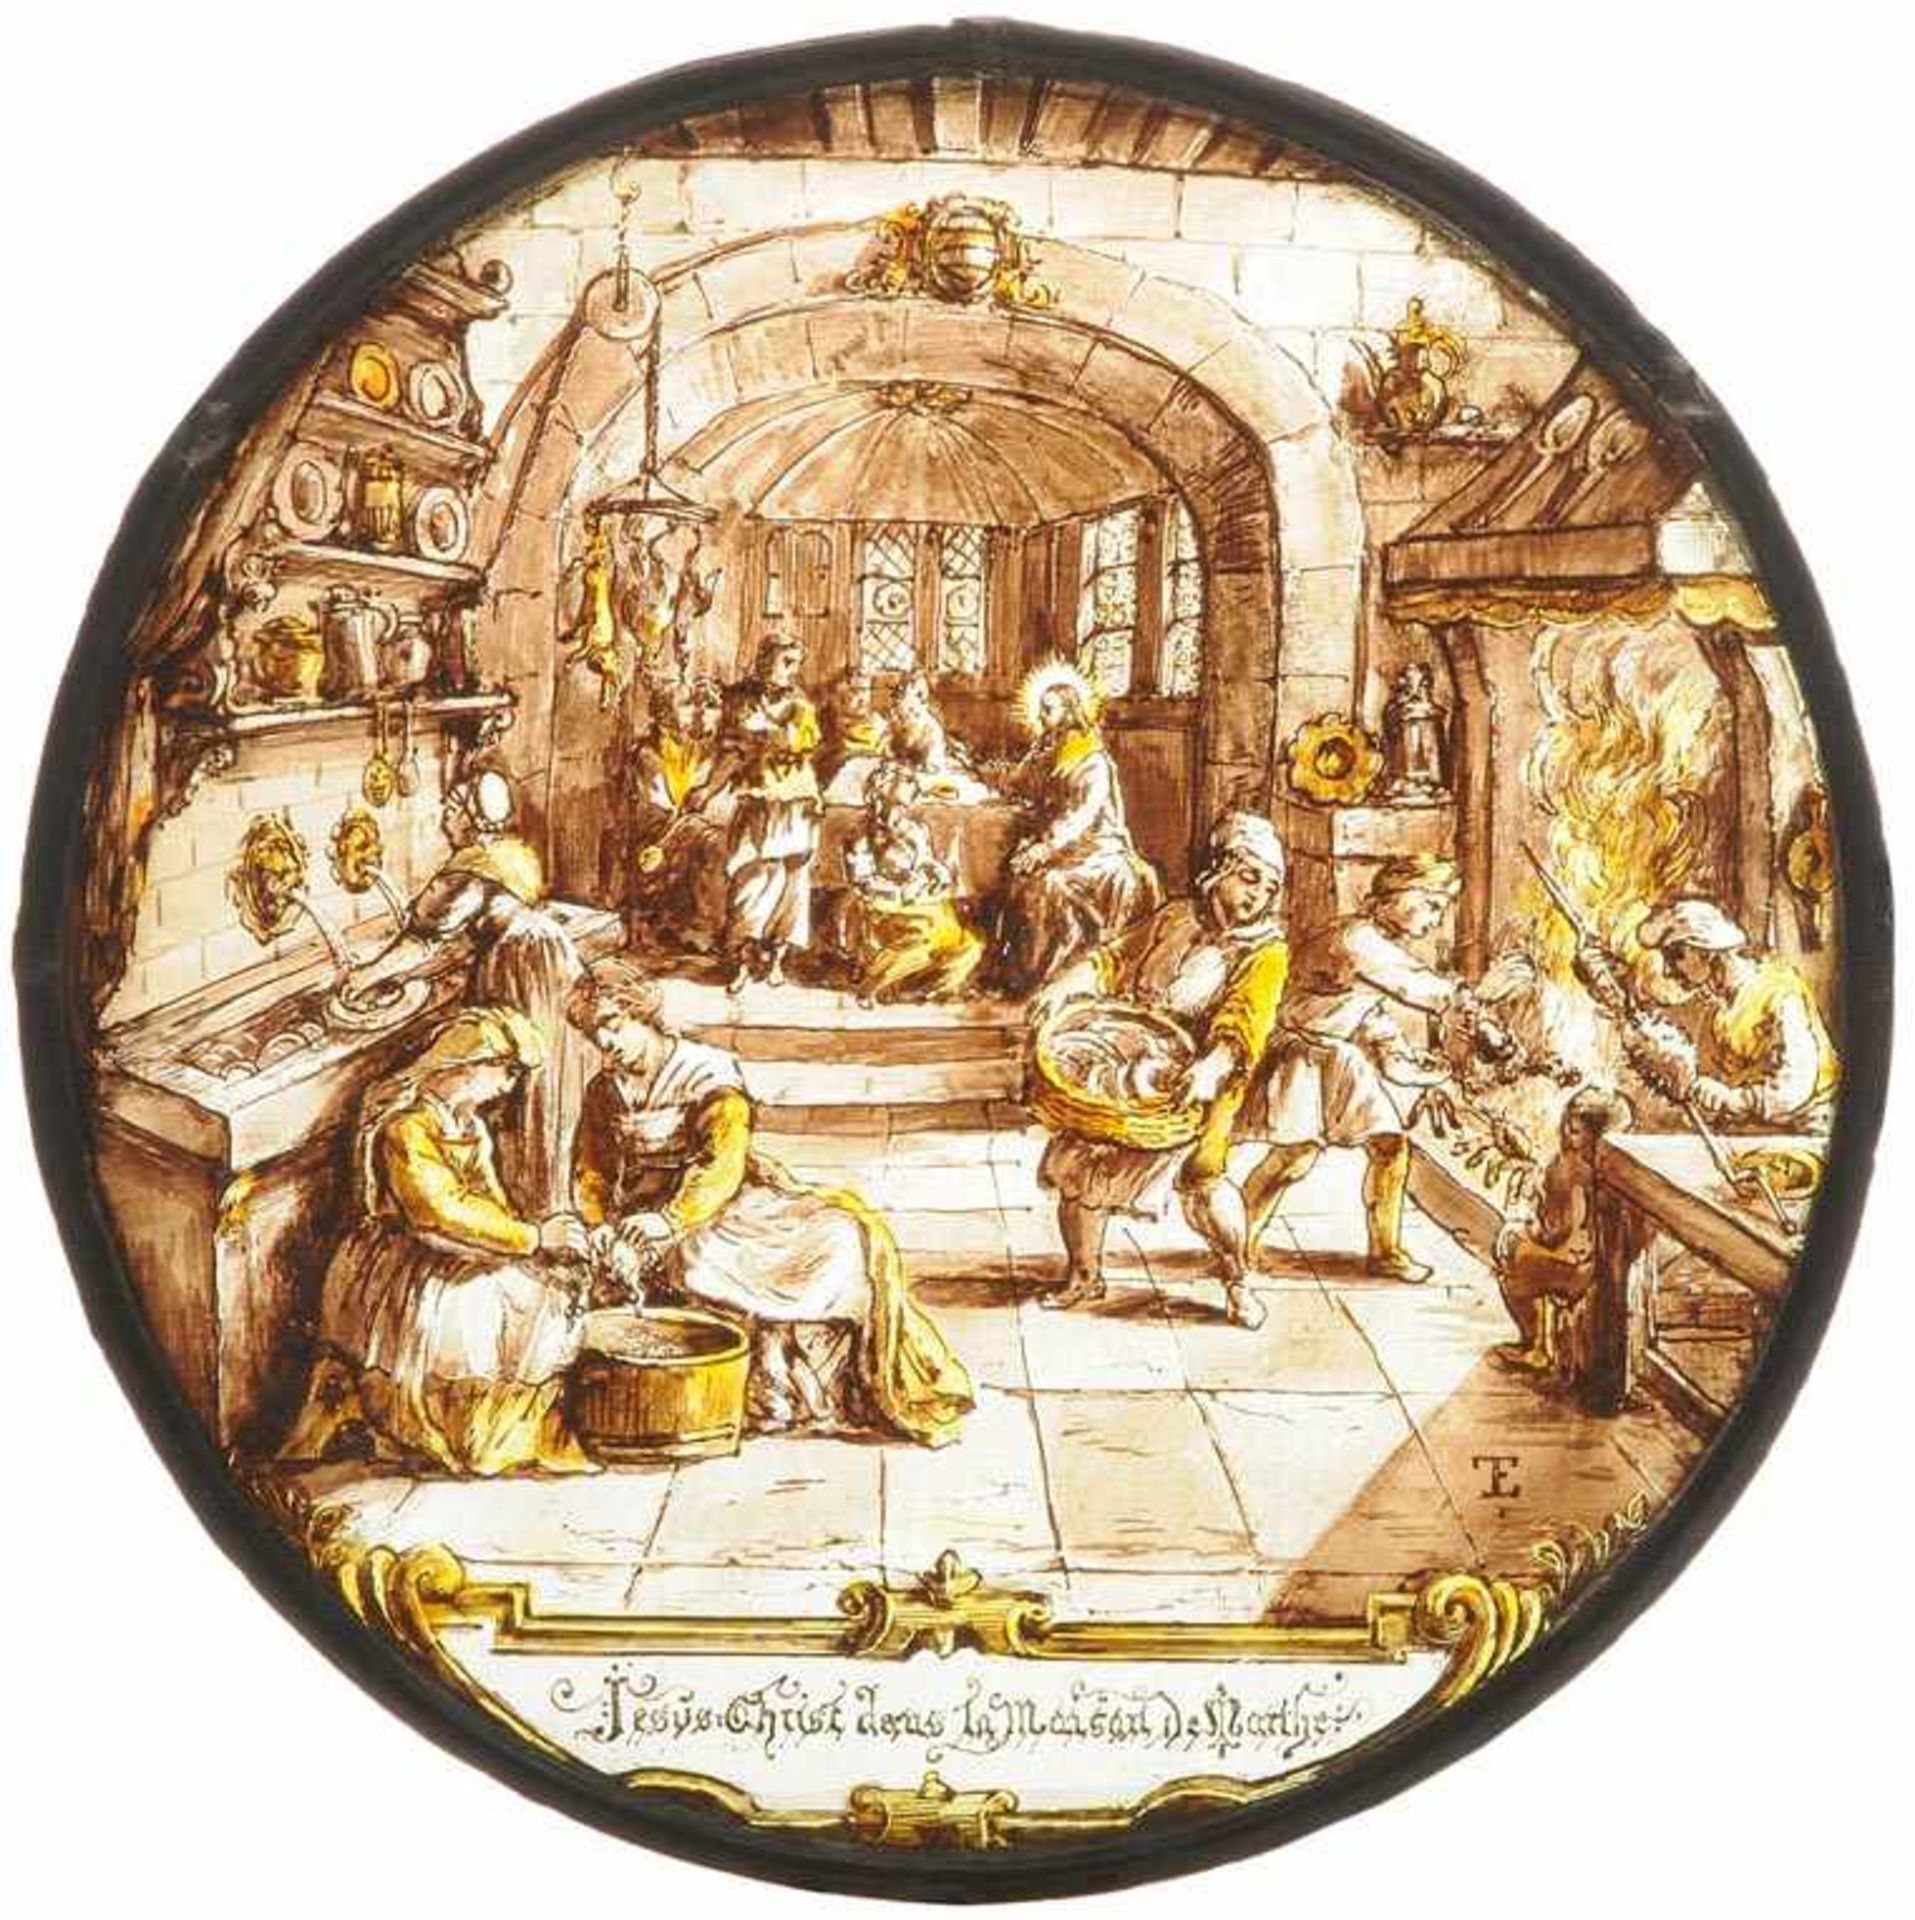 1 Paar Glasgemälde Frankreich, 19.Jh., in der Art des 17.Jhs. Rundscheiben. Glas geätzt, bemalt in - Bild 3 aus 3